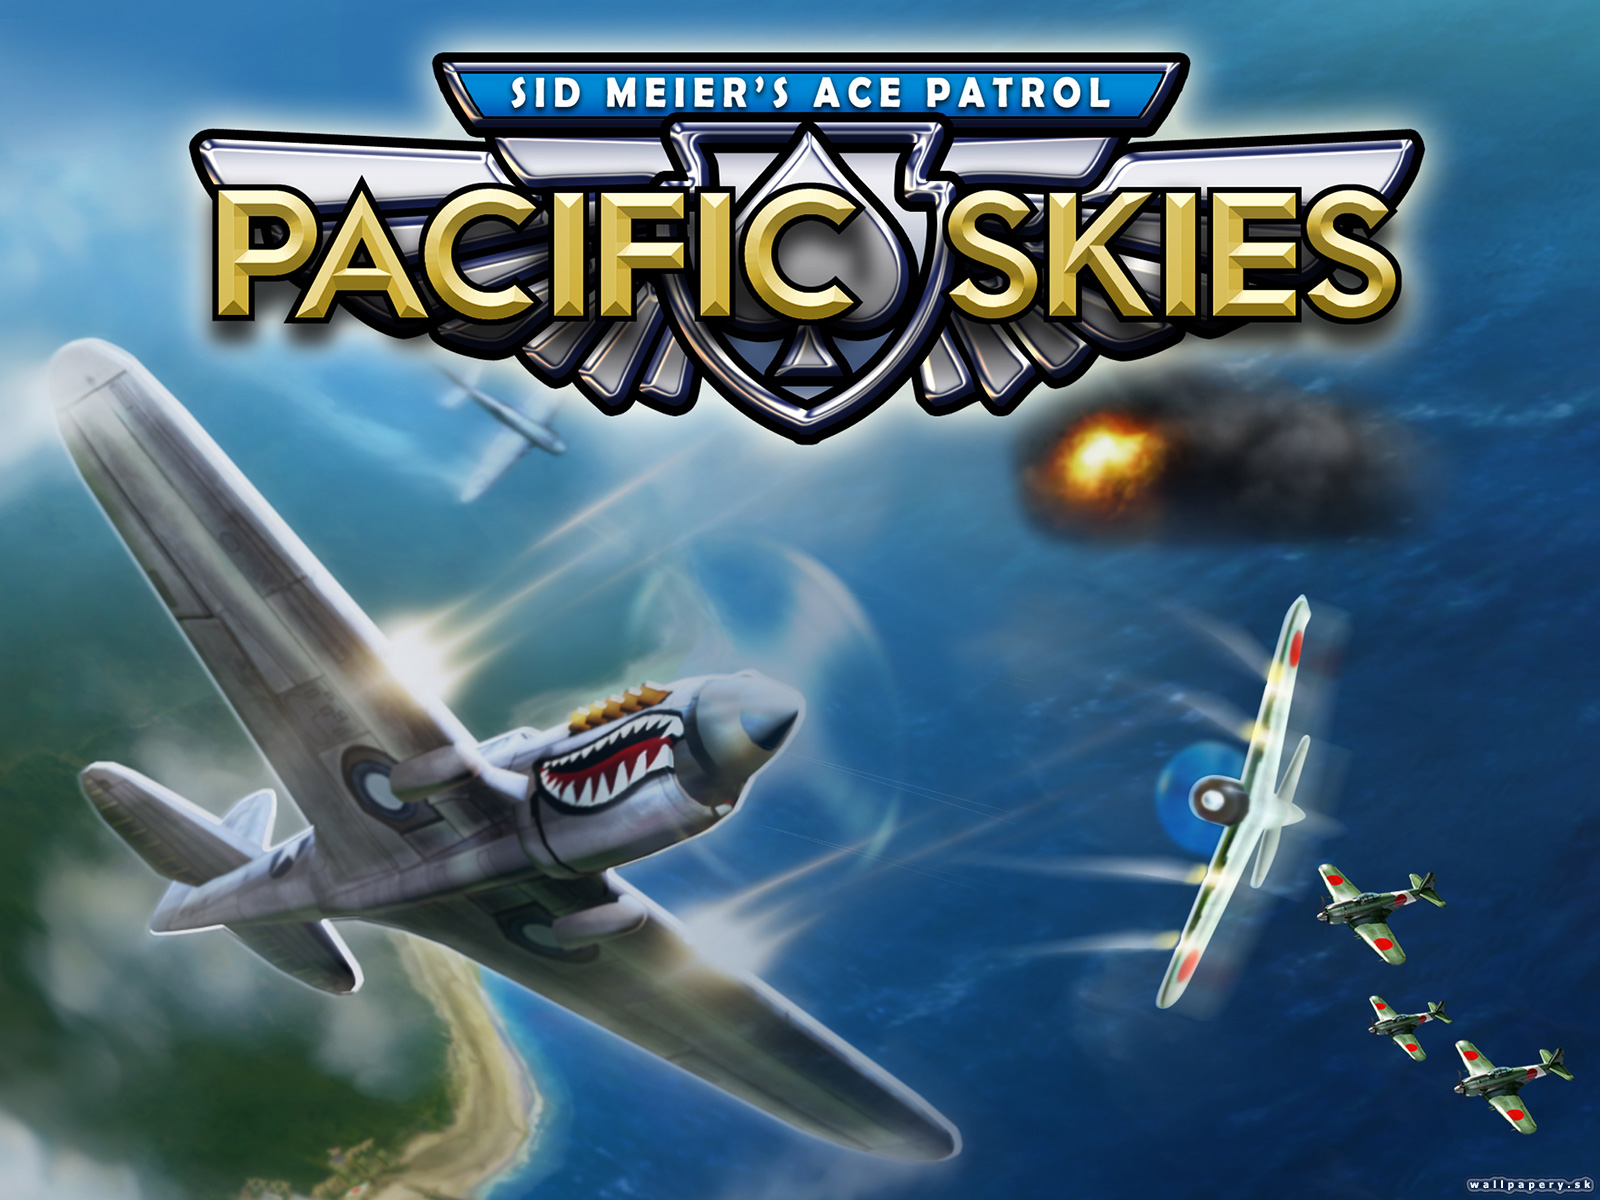 Sid Meier's Ace Patrol: Pacific Skies - wallpaper 1